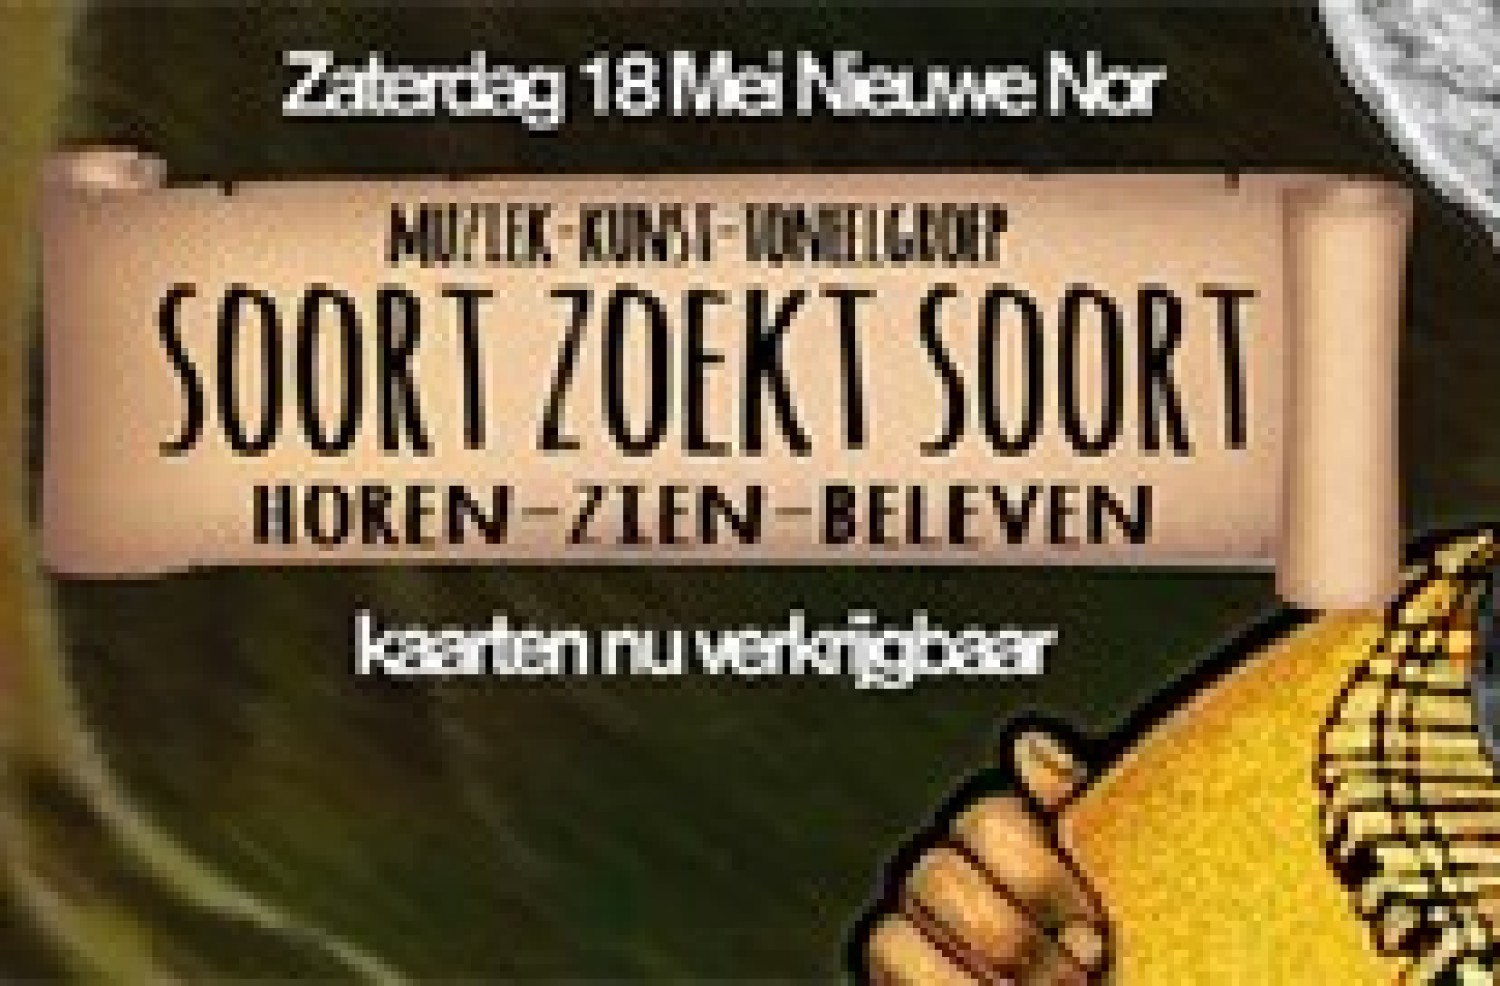 Party report: Soort zoekt Soort, Nieuwe Nor, 18 mei 2013